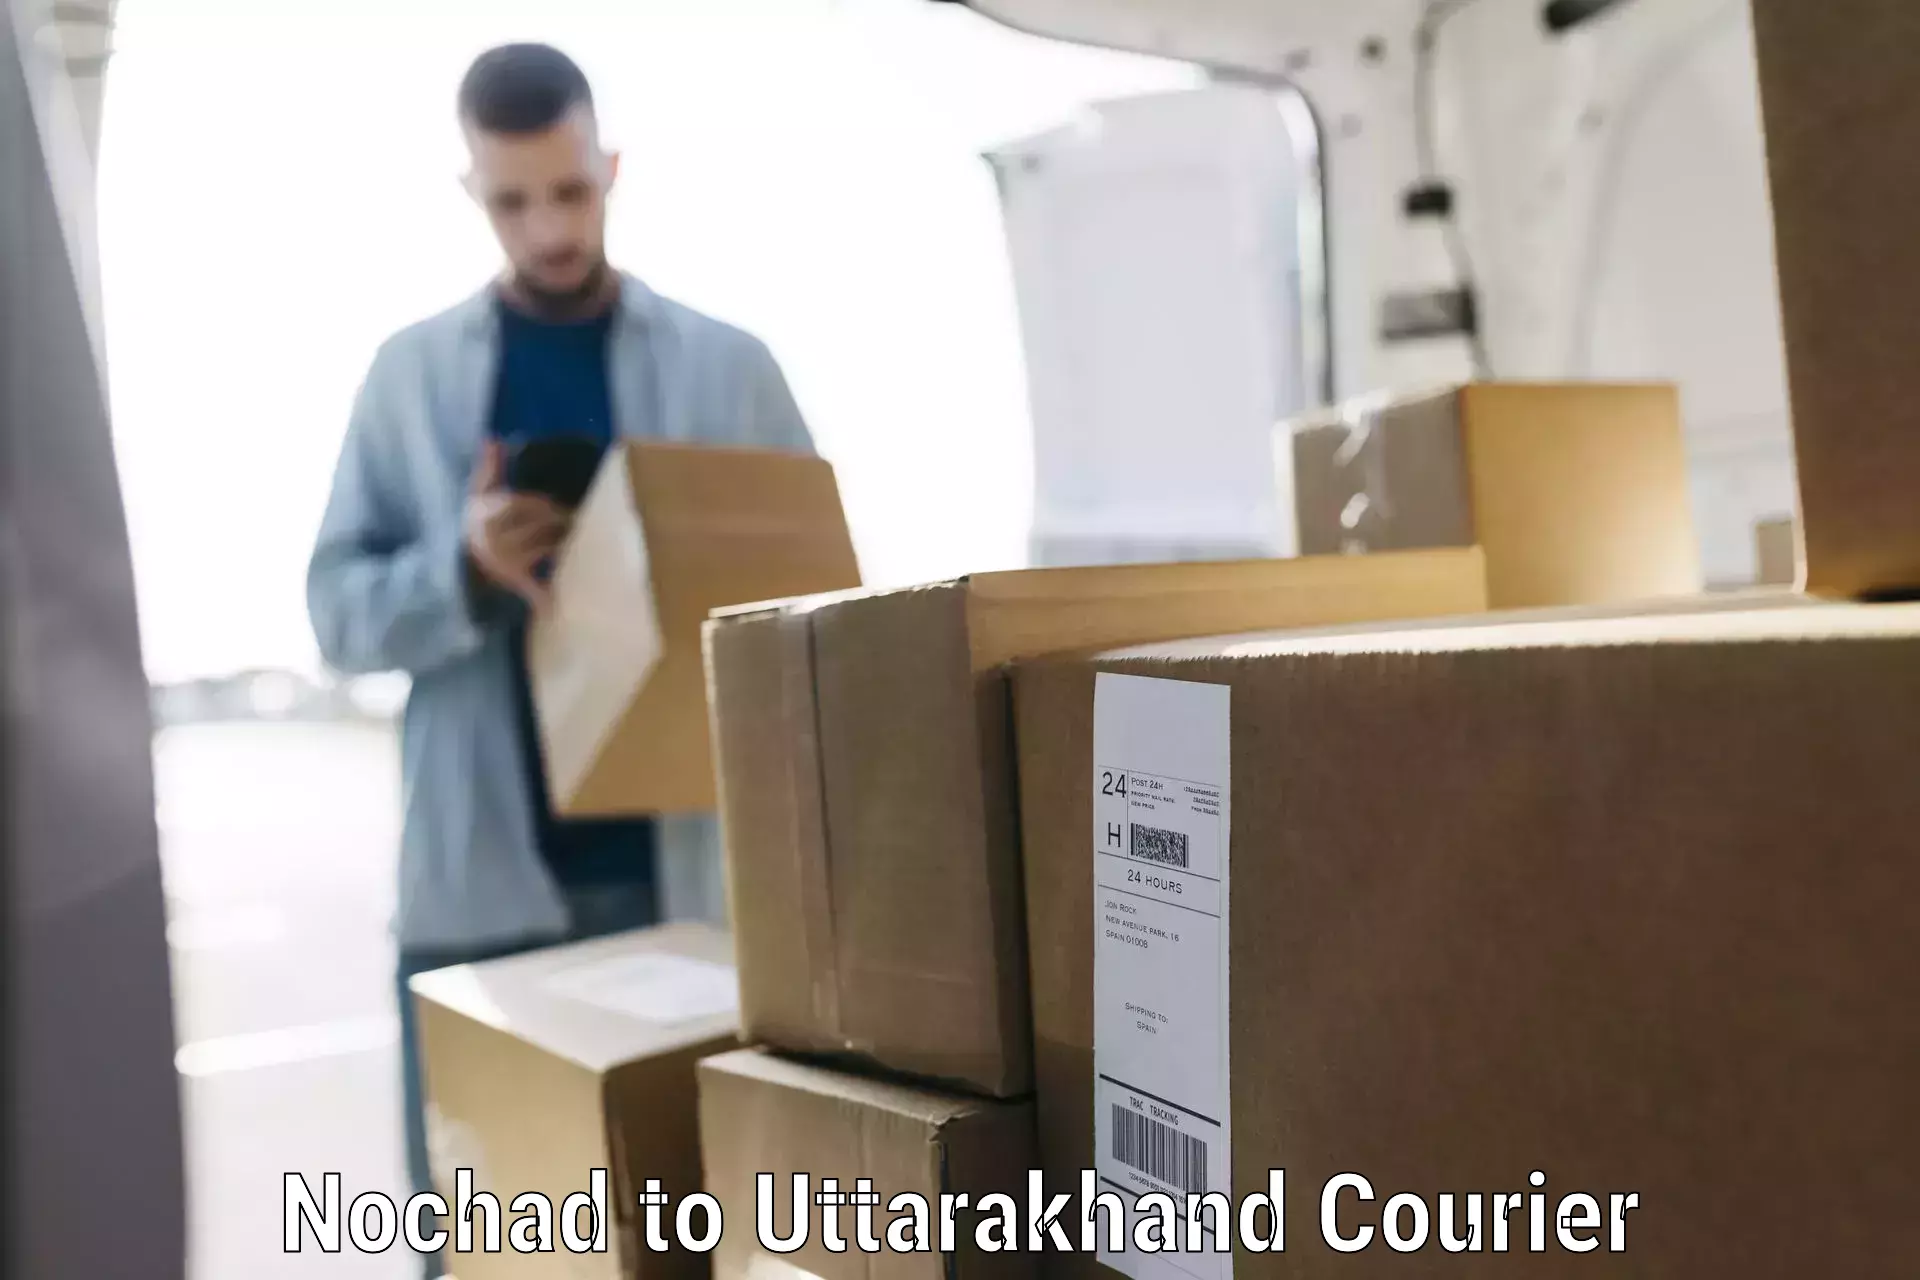 Luggage transport service Nochad to Uttarakhand